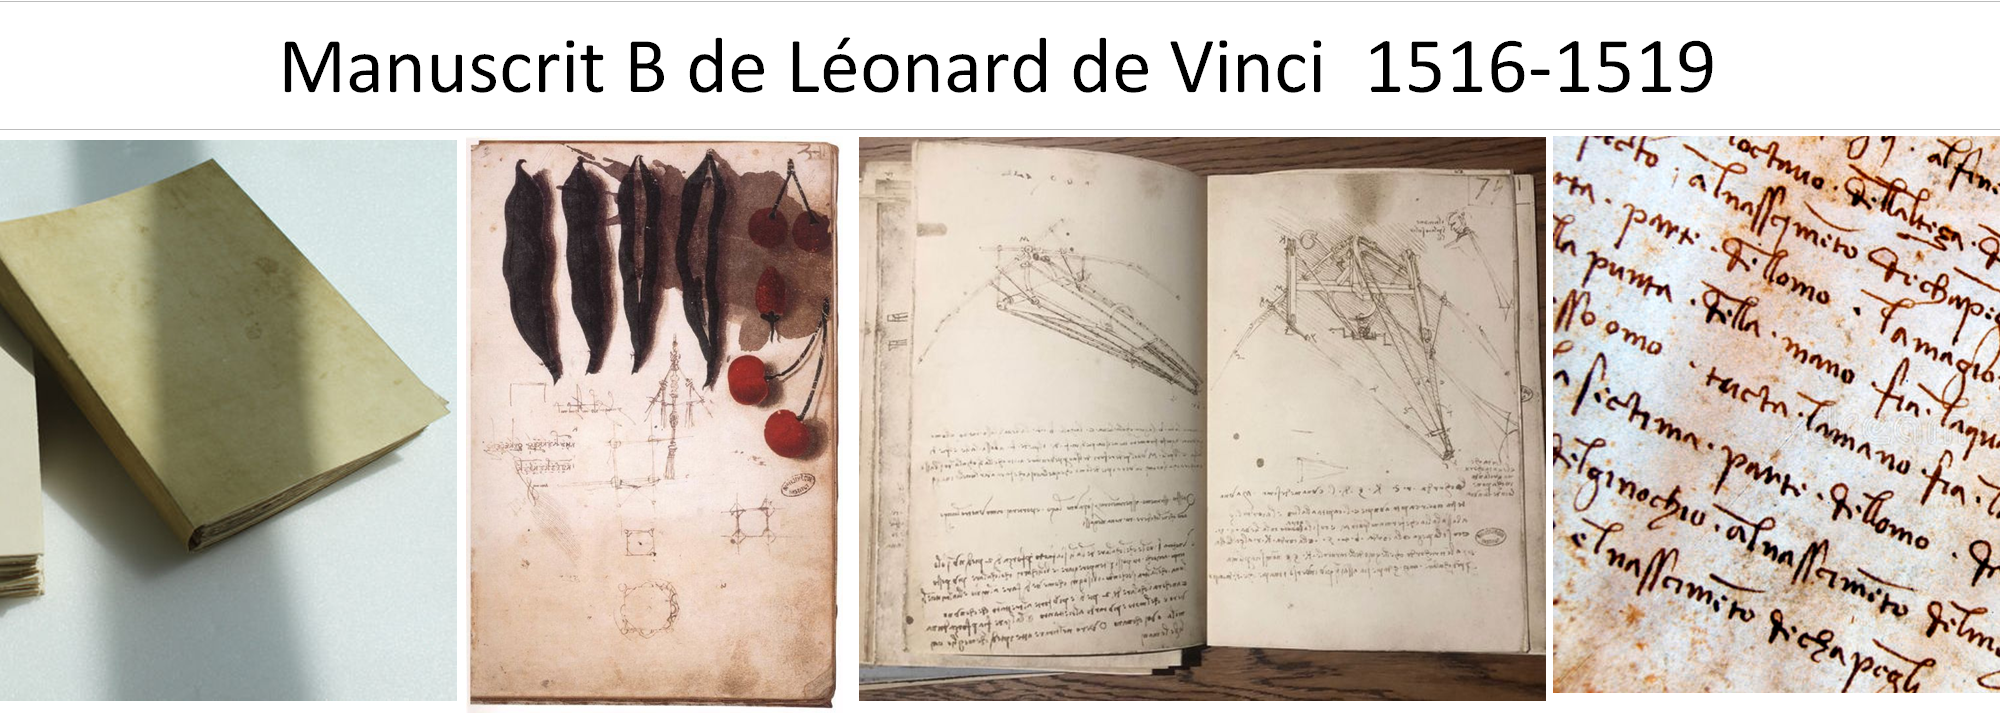 Manuscrit B de Léonard de Vinci 1516-1519